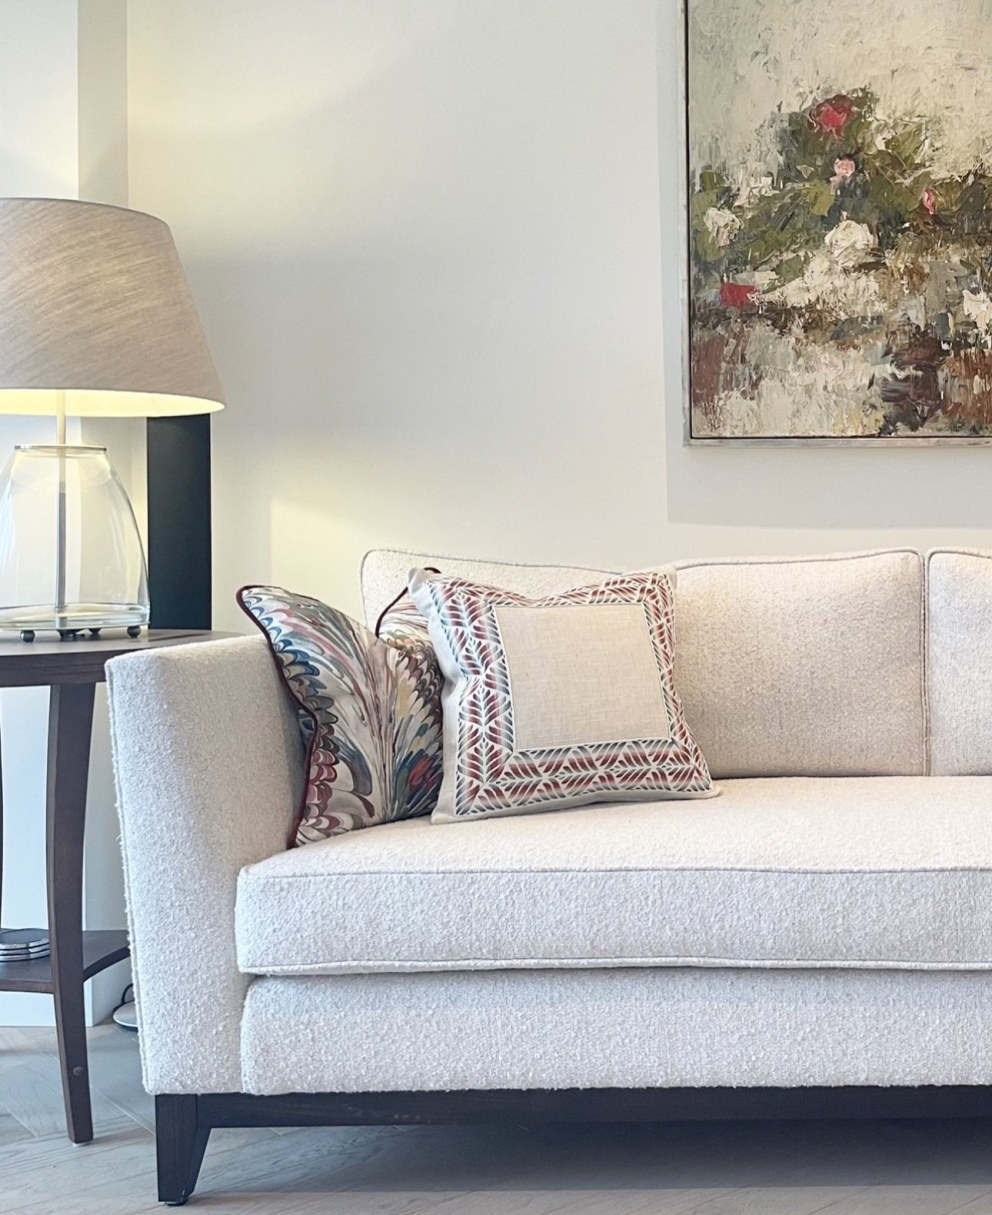 West Clandon Living Room | West Clandon Living Room | Interior Designers